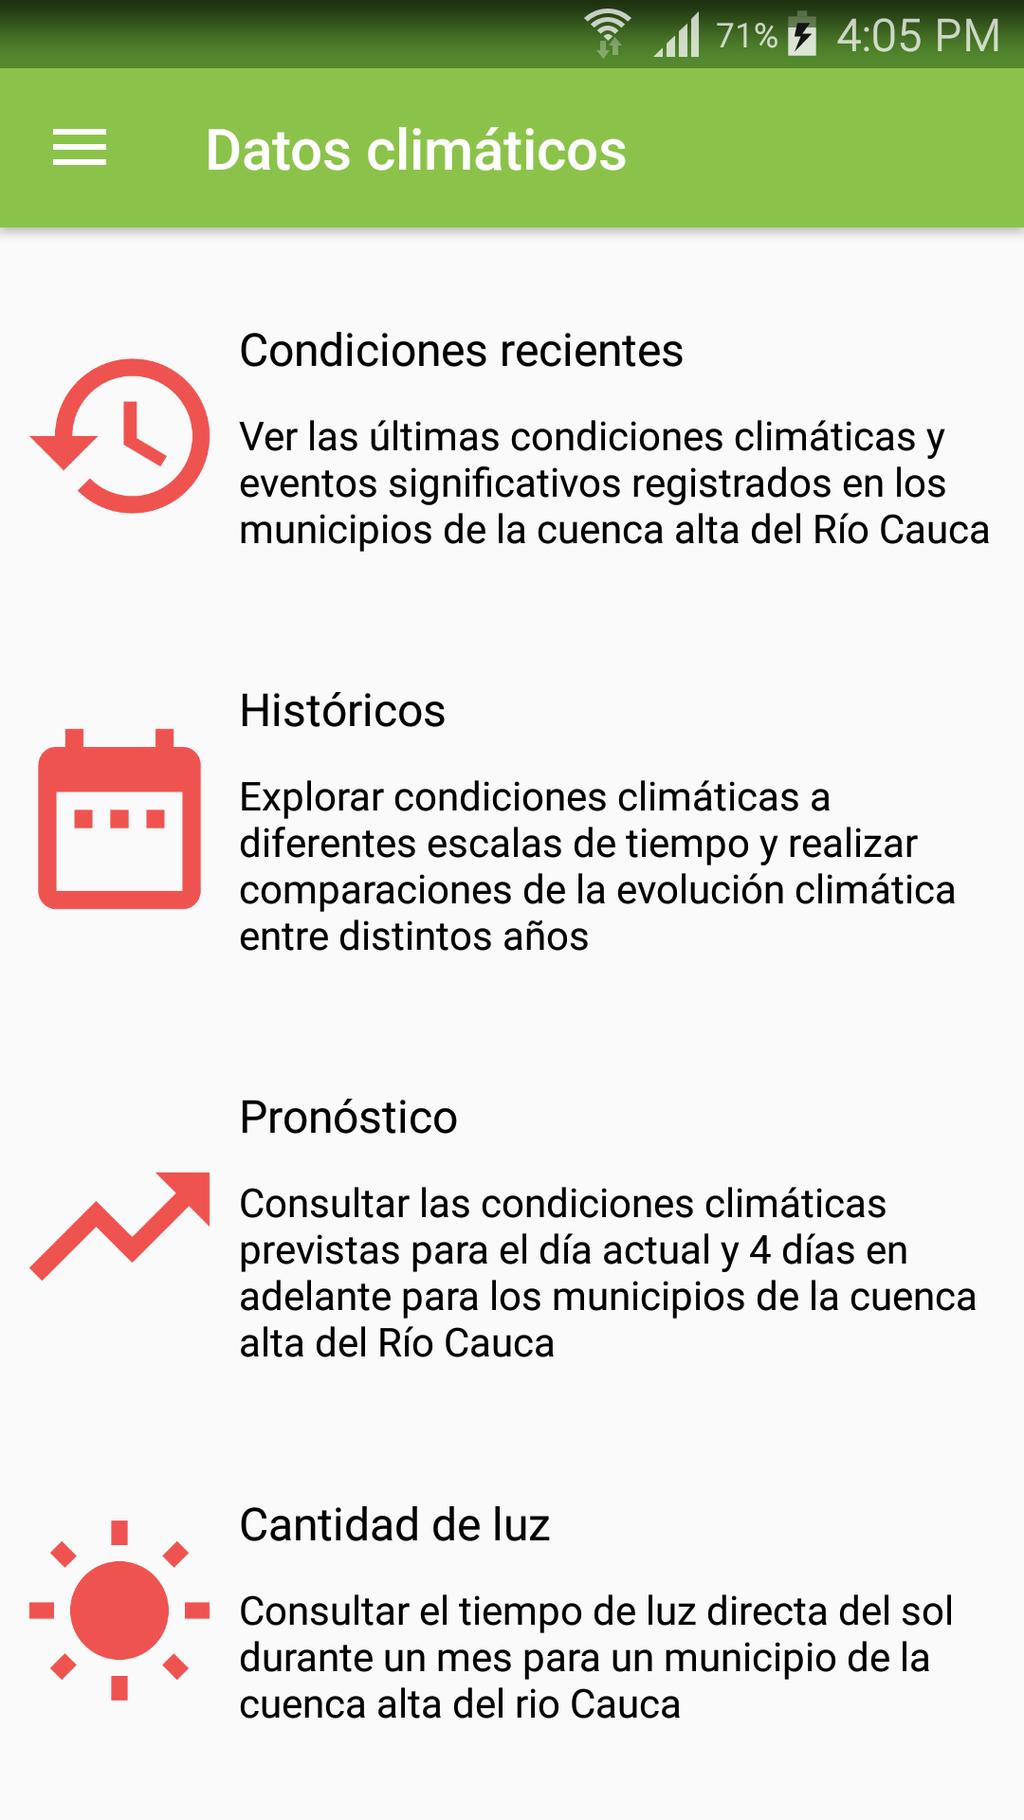 5. DATOS CLIMÁTICOS En esta opción se puede acceder a cuatro servicios, todos relacionados con el clima de diferentes ubicaciones en la cuenca alta del río Cauca.